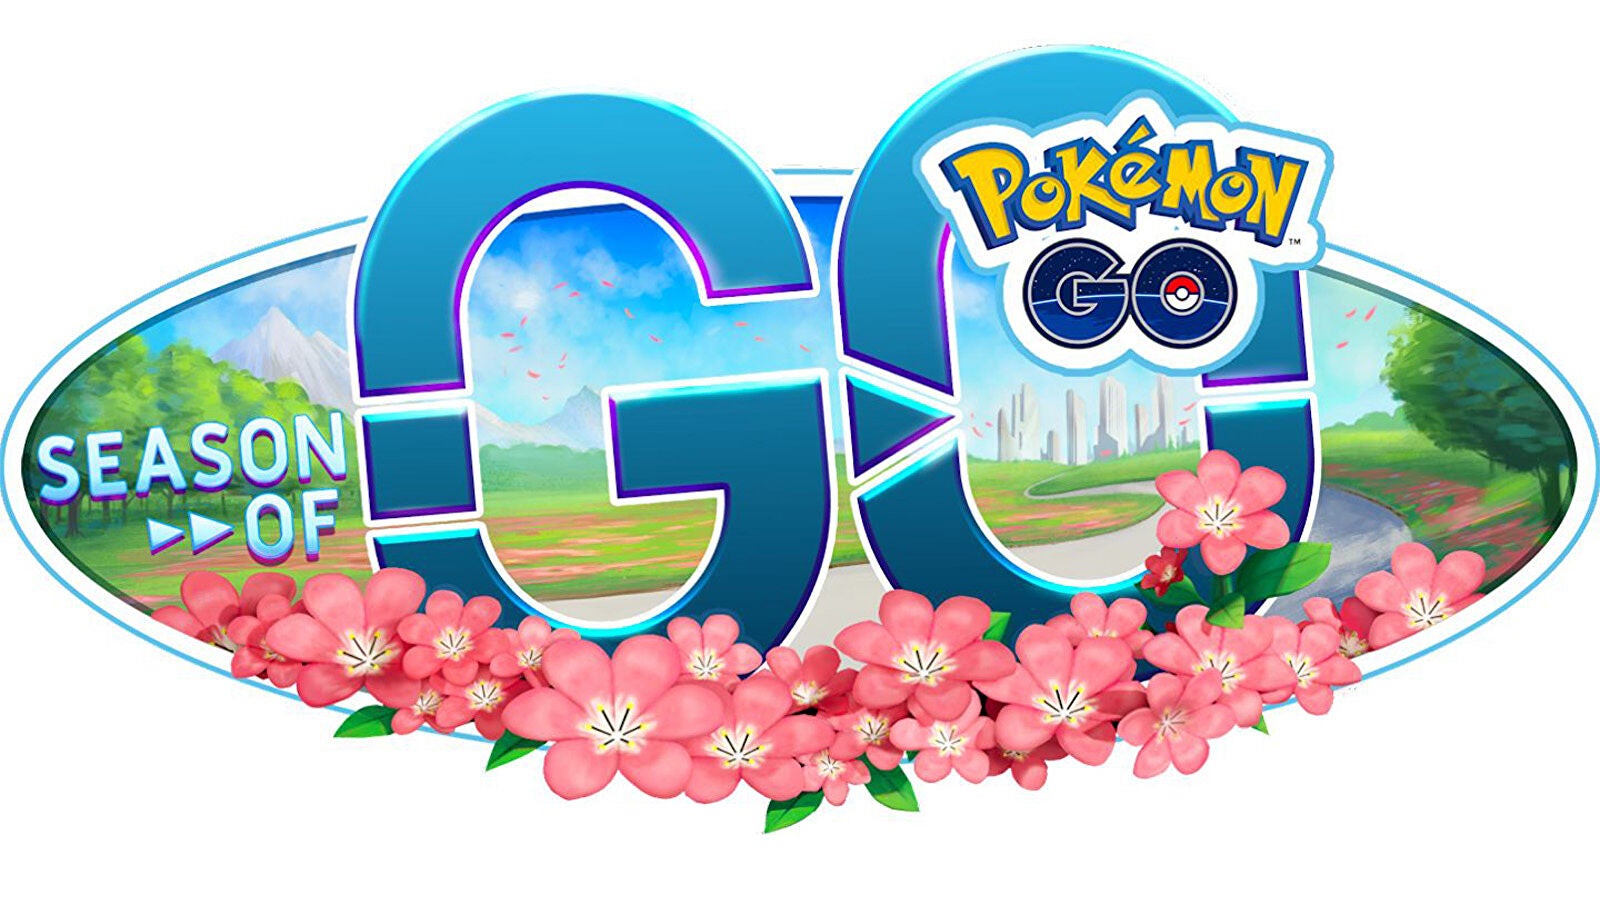 Afbeeldingen van Pokémon Go Season of Go uitgelegd - wat is er nieuw in Season of Go